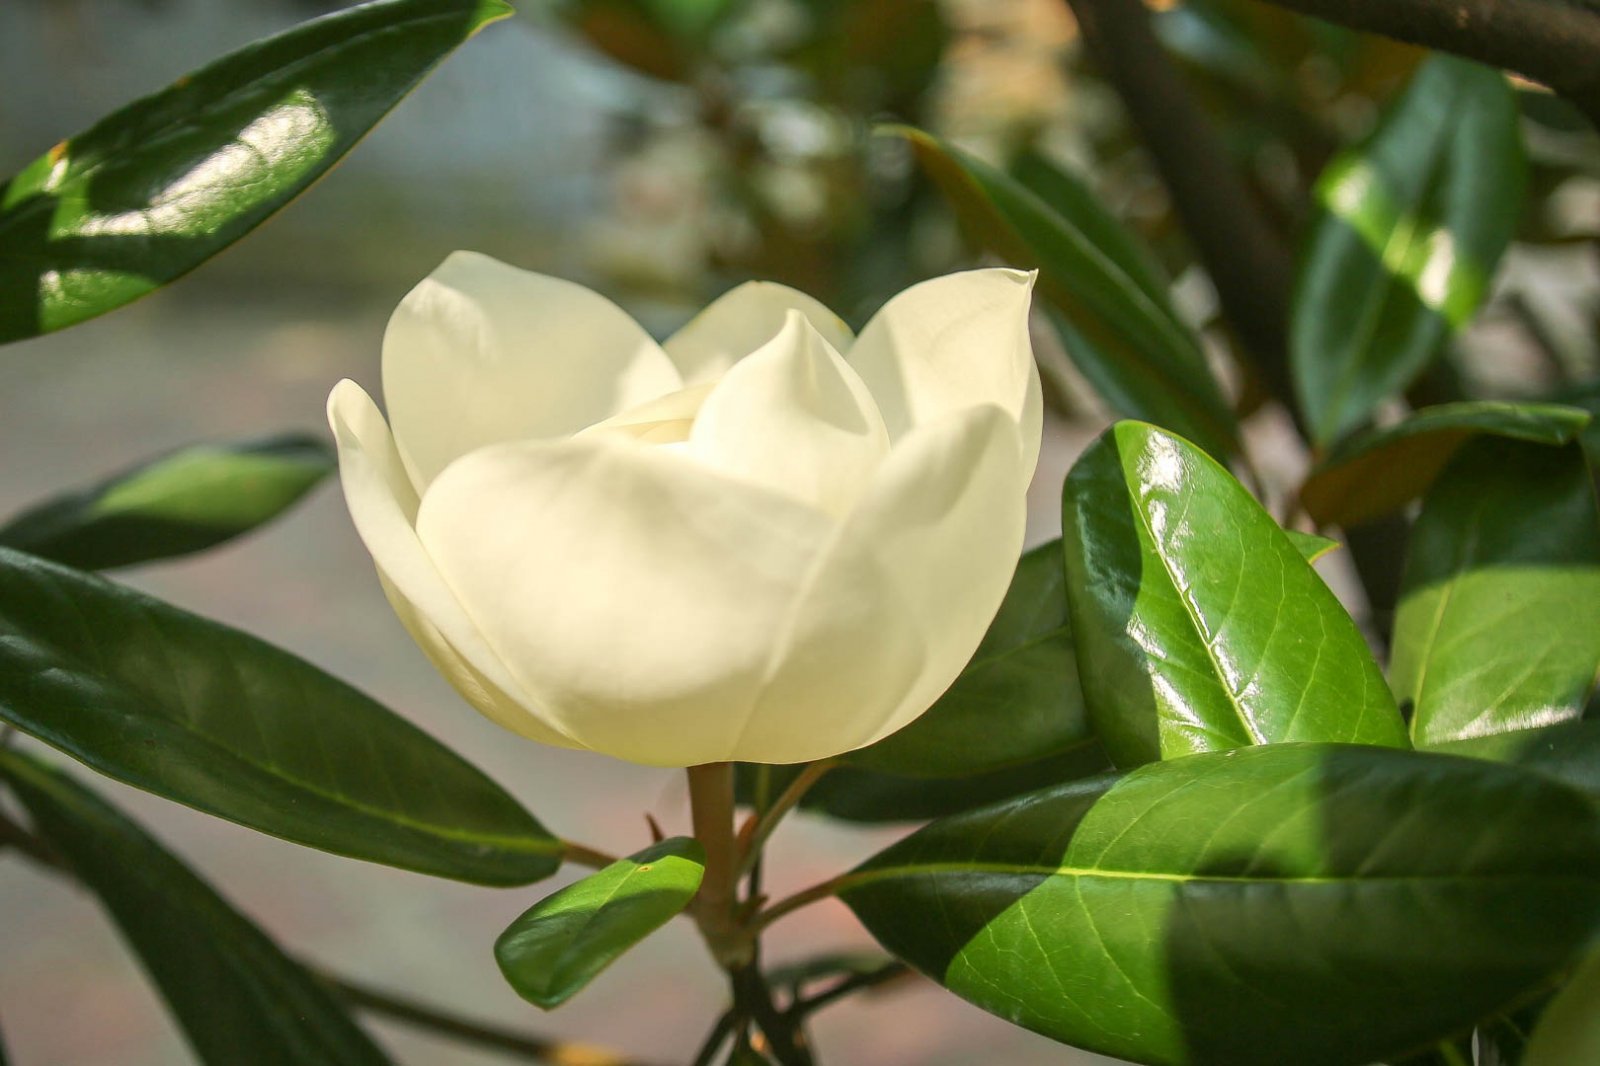 Hoa sen đất có màu trắng tinh, cánh dày và thơm hơn sen nước. Khi hoa nở hết cỡ, bông to bằng cái bát ăn cơm.